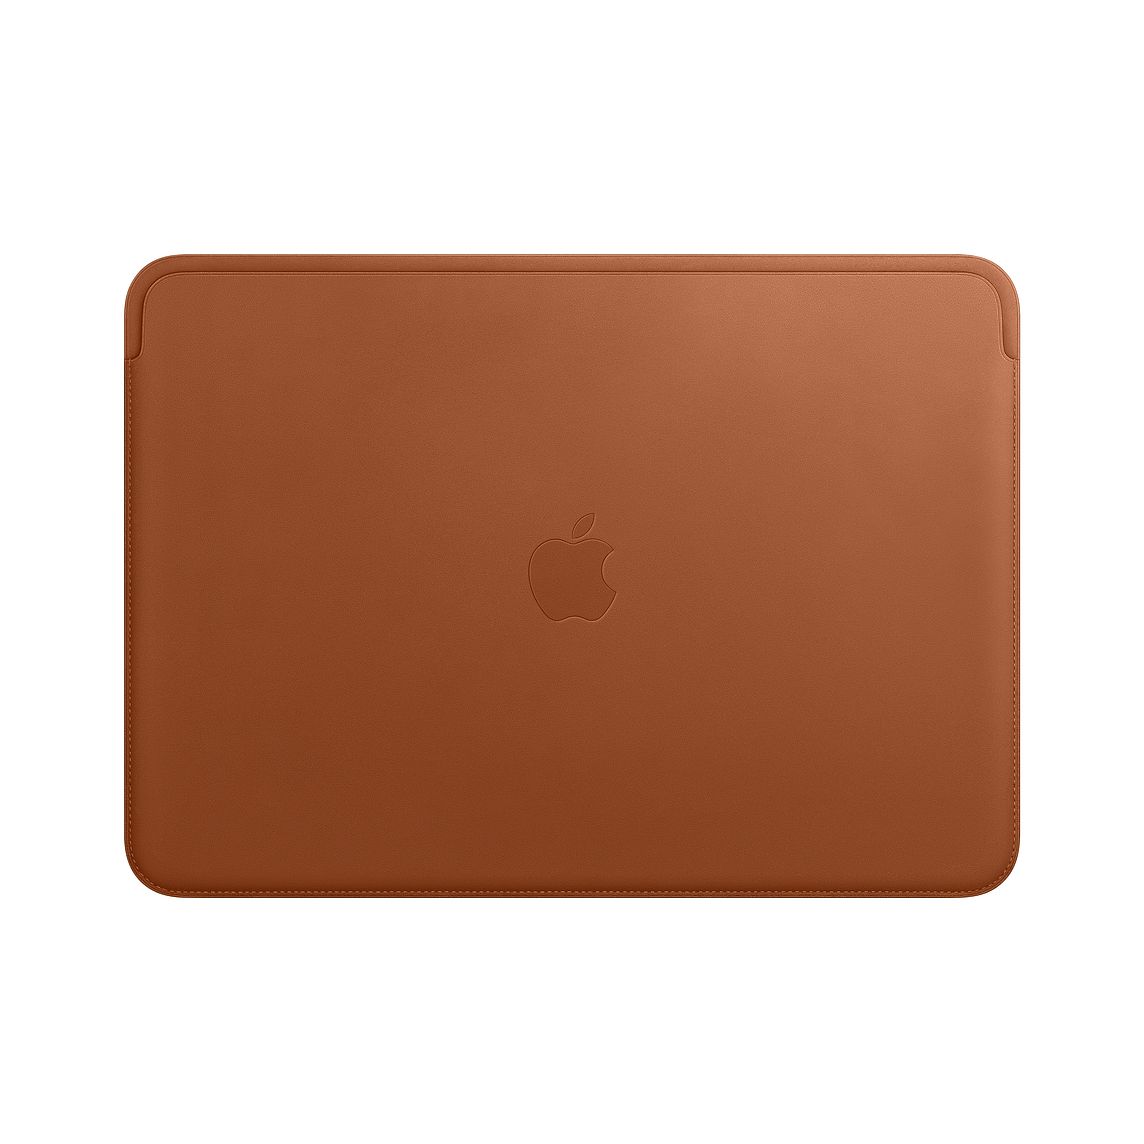 Apple、｢13インチMacBook AirとMacBook Pro用レザースリーブ｣を販売開始 | 気になる、記になる…